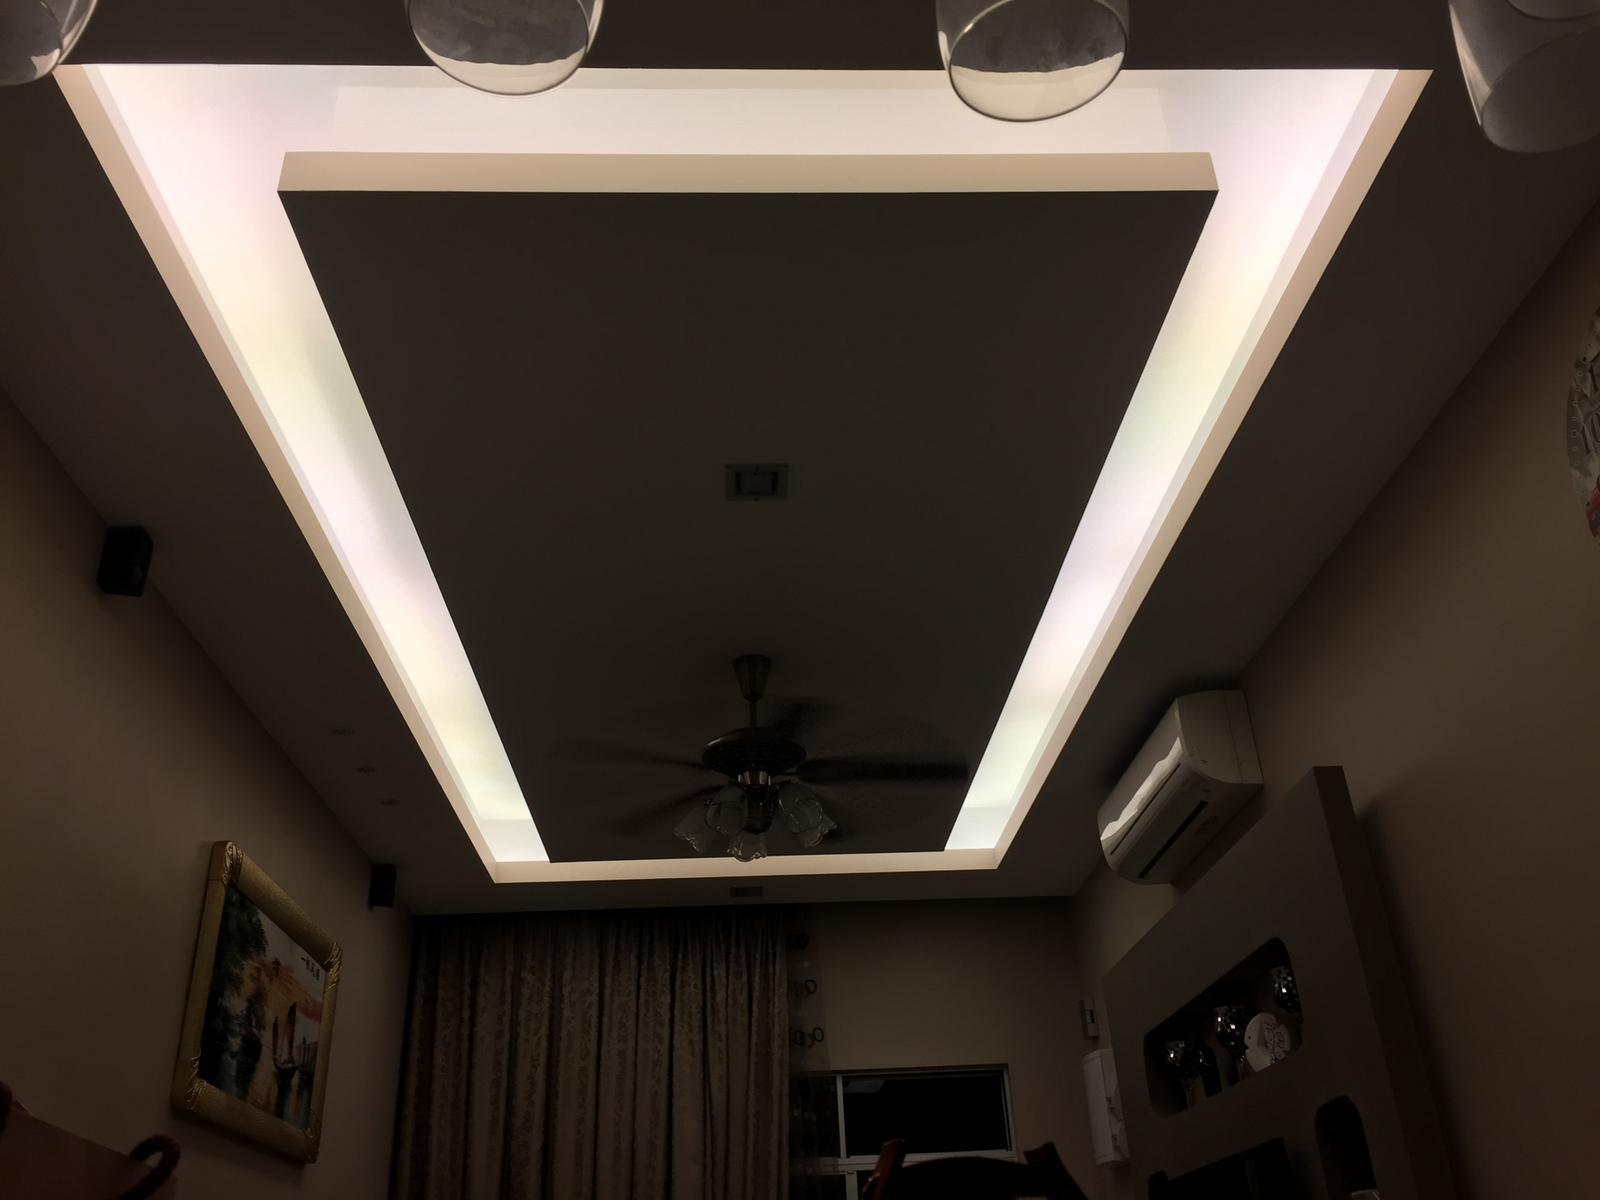 plaster ceiling designs for living room